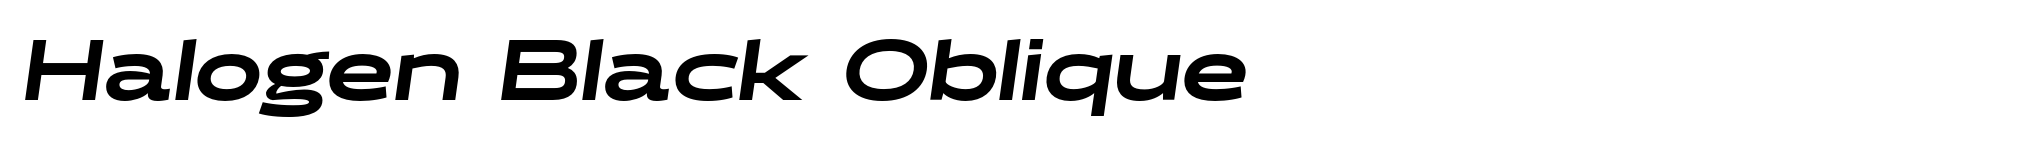 Halogen Black Oblique image